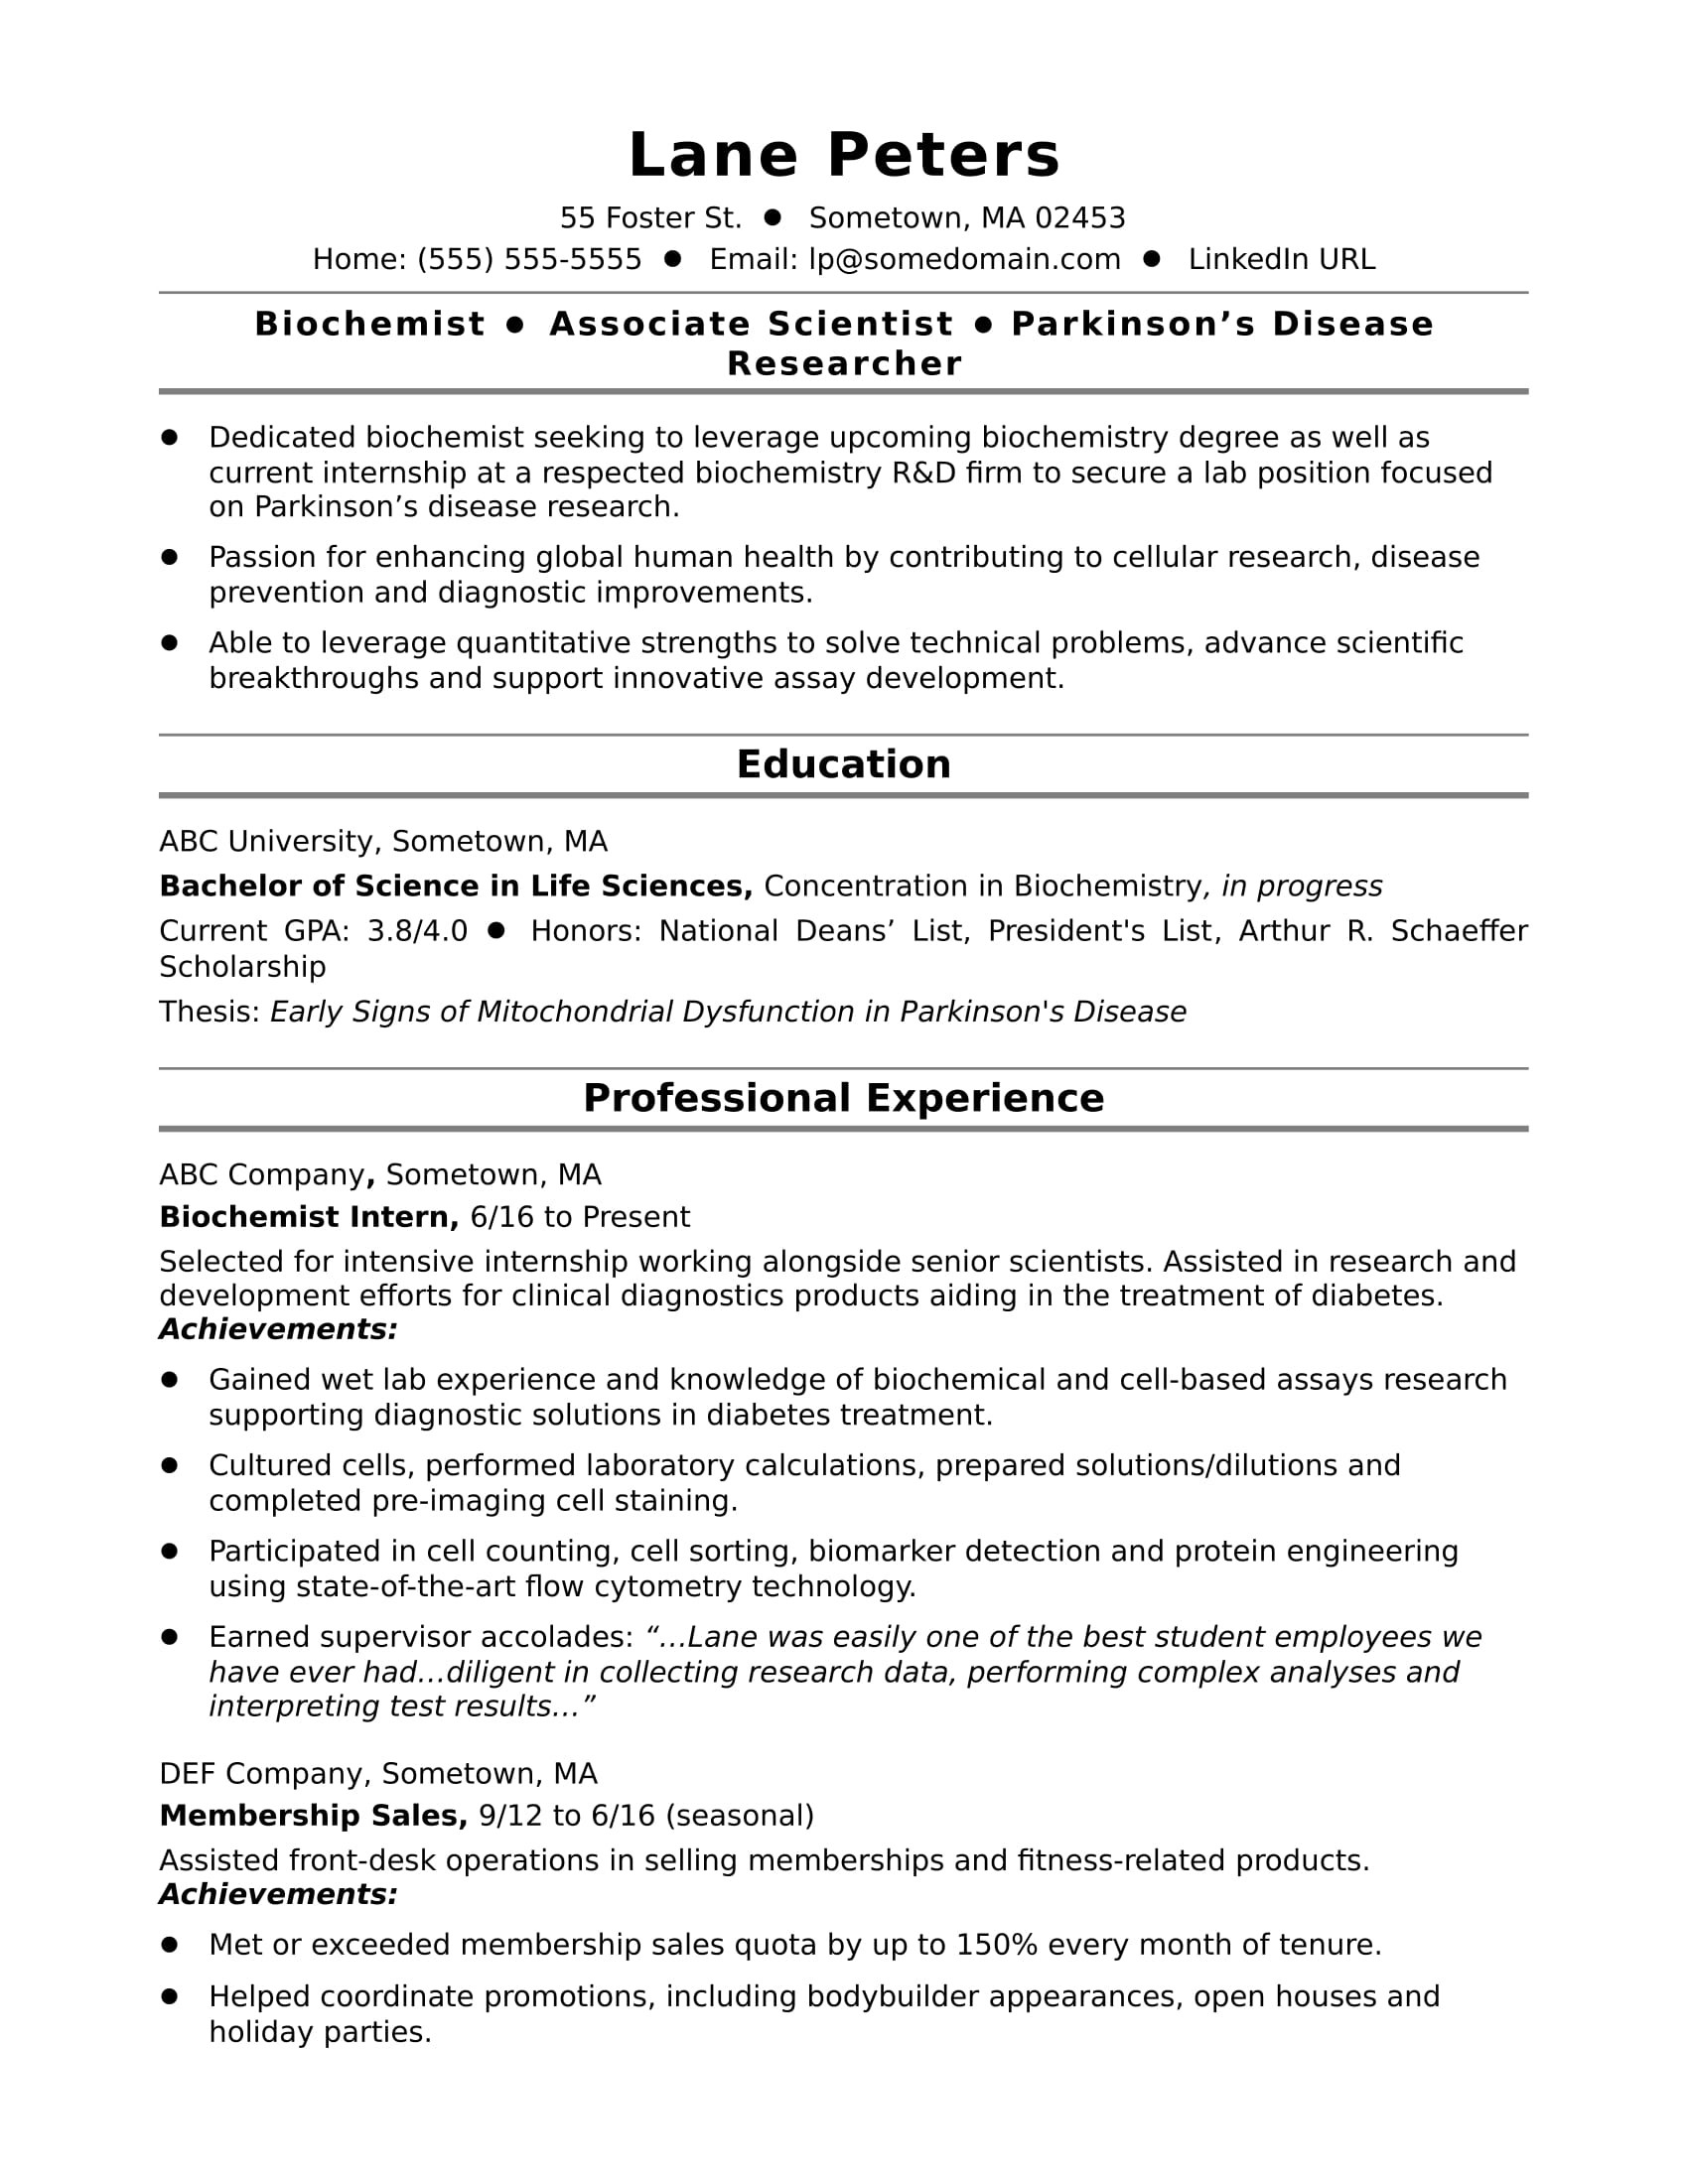 Degree In Progress On Resume Sample Entry-level Biochemist Resume Sample Monster.com